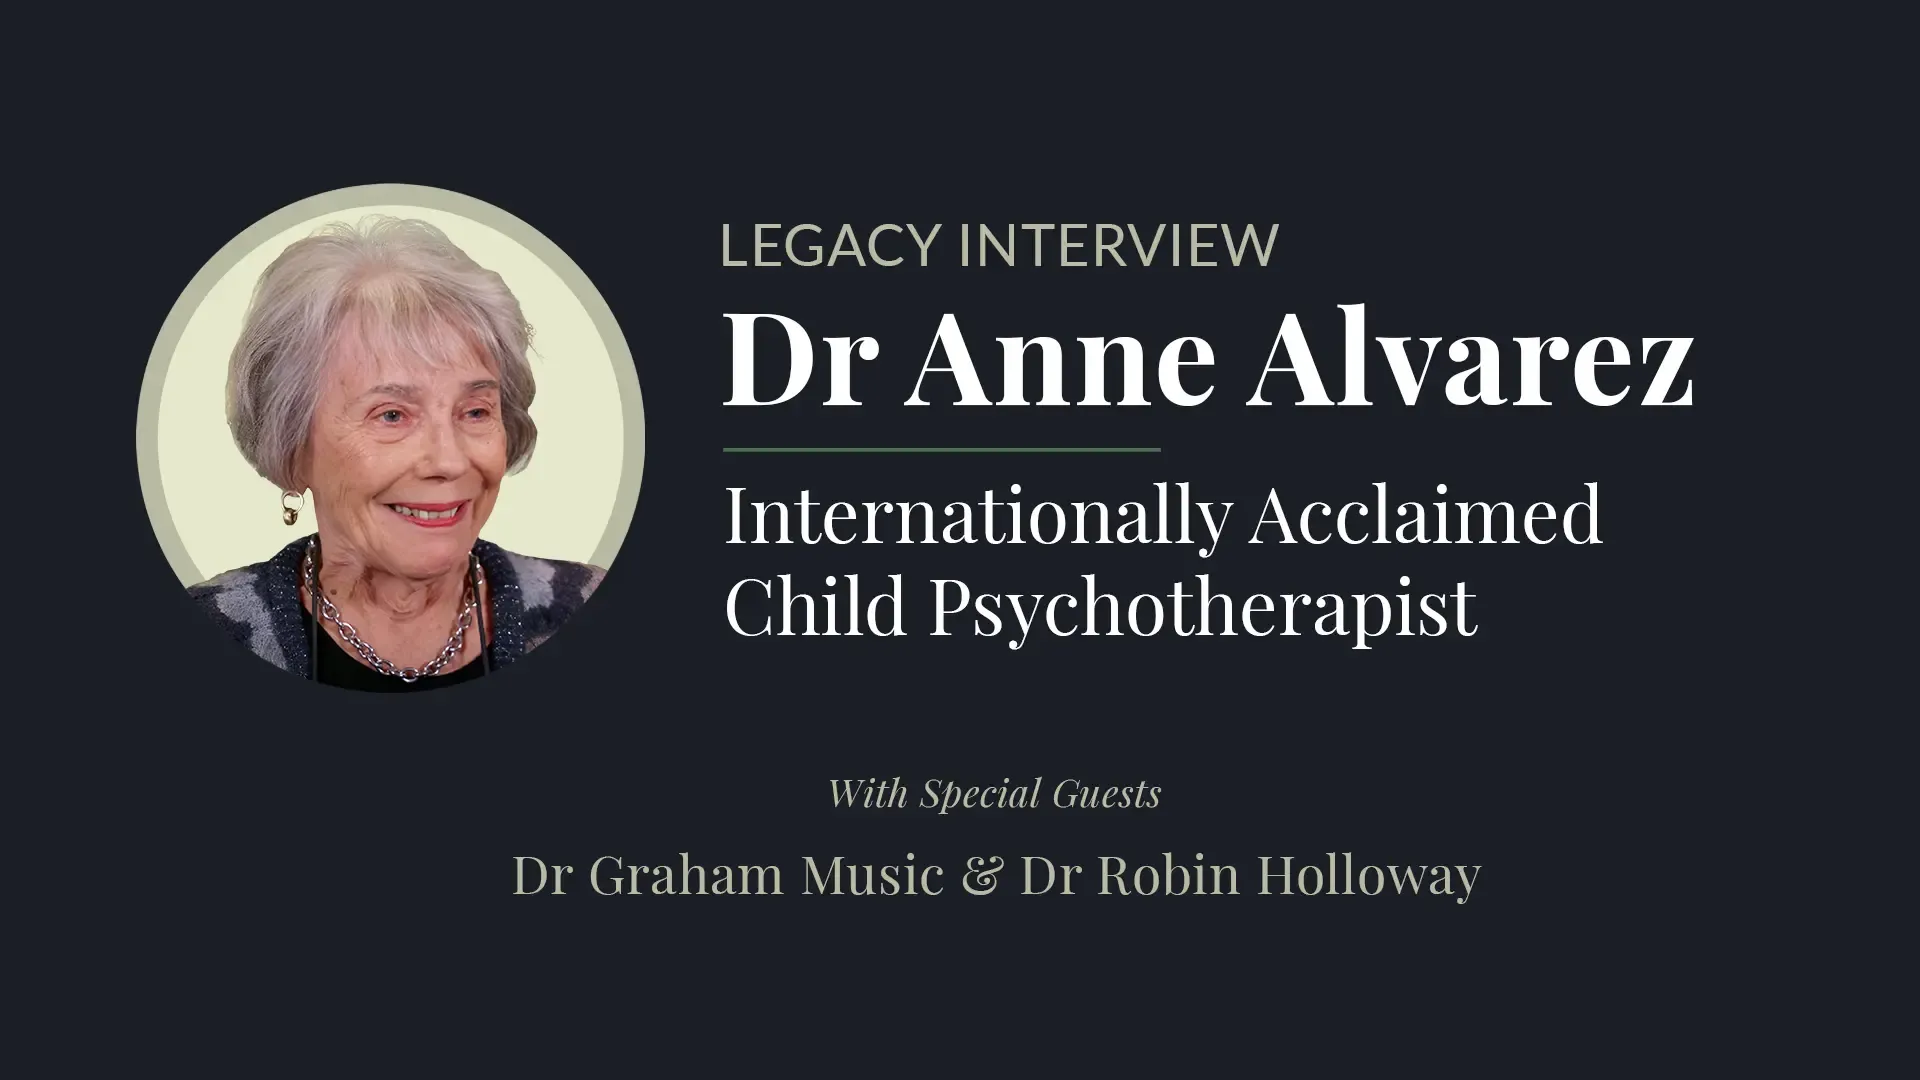 Dr Anne Alvarez Legacy Interview Recording details